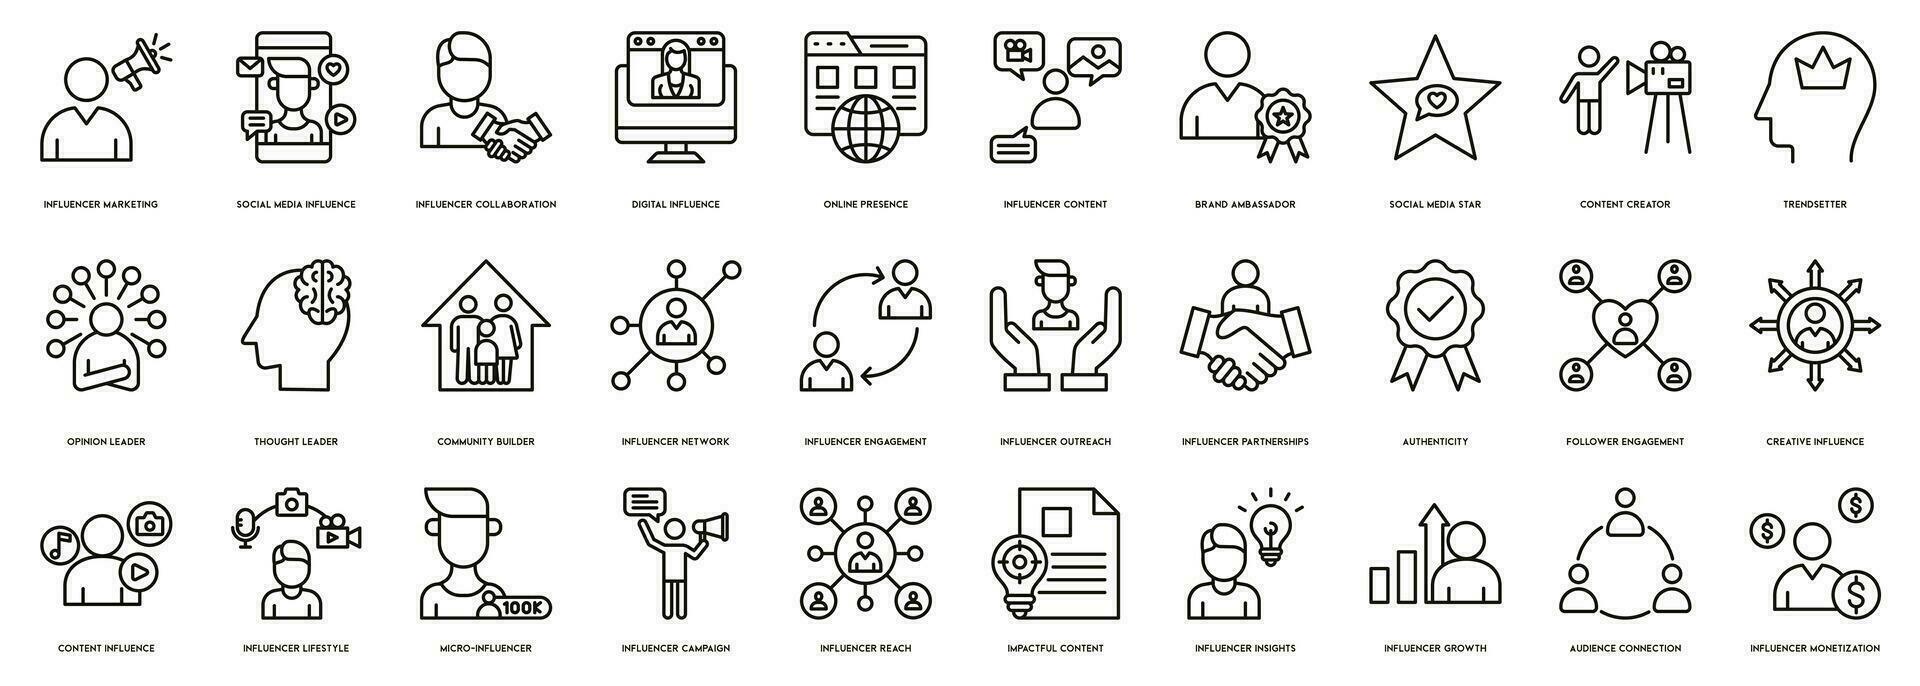 influencer vektorer ikon illustration för influencer marknadsföring, social media inflytande, influencer samarbete, digital inflytande och uppkopplad närvaro